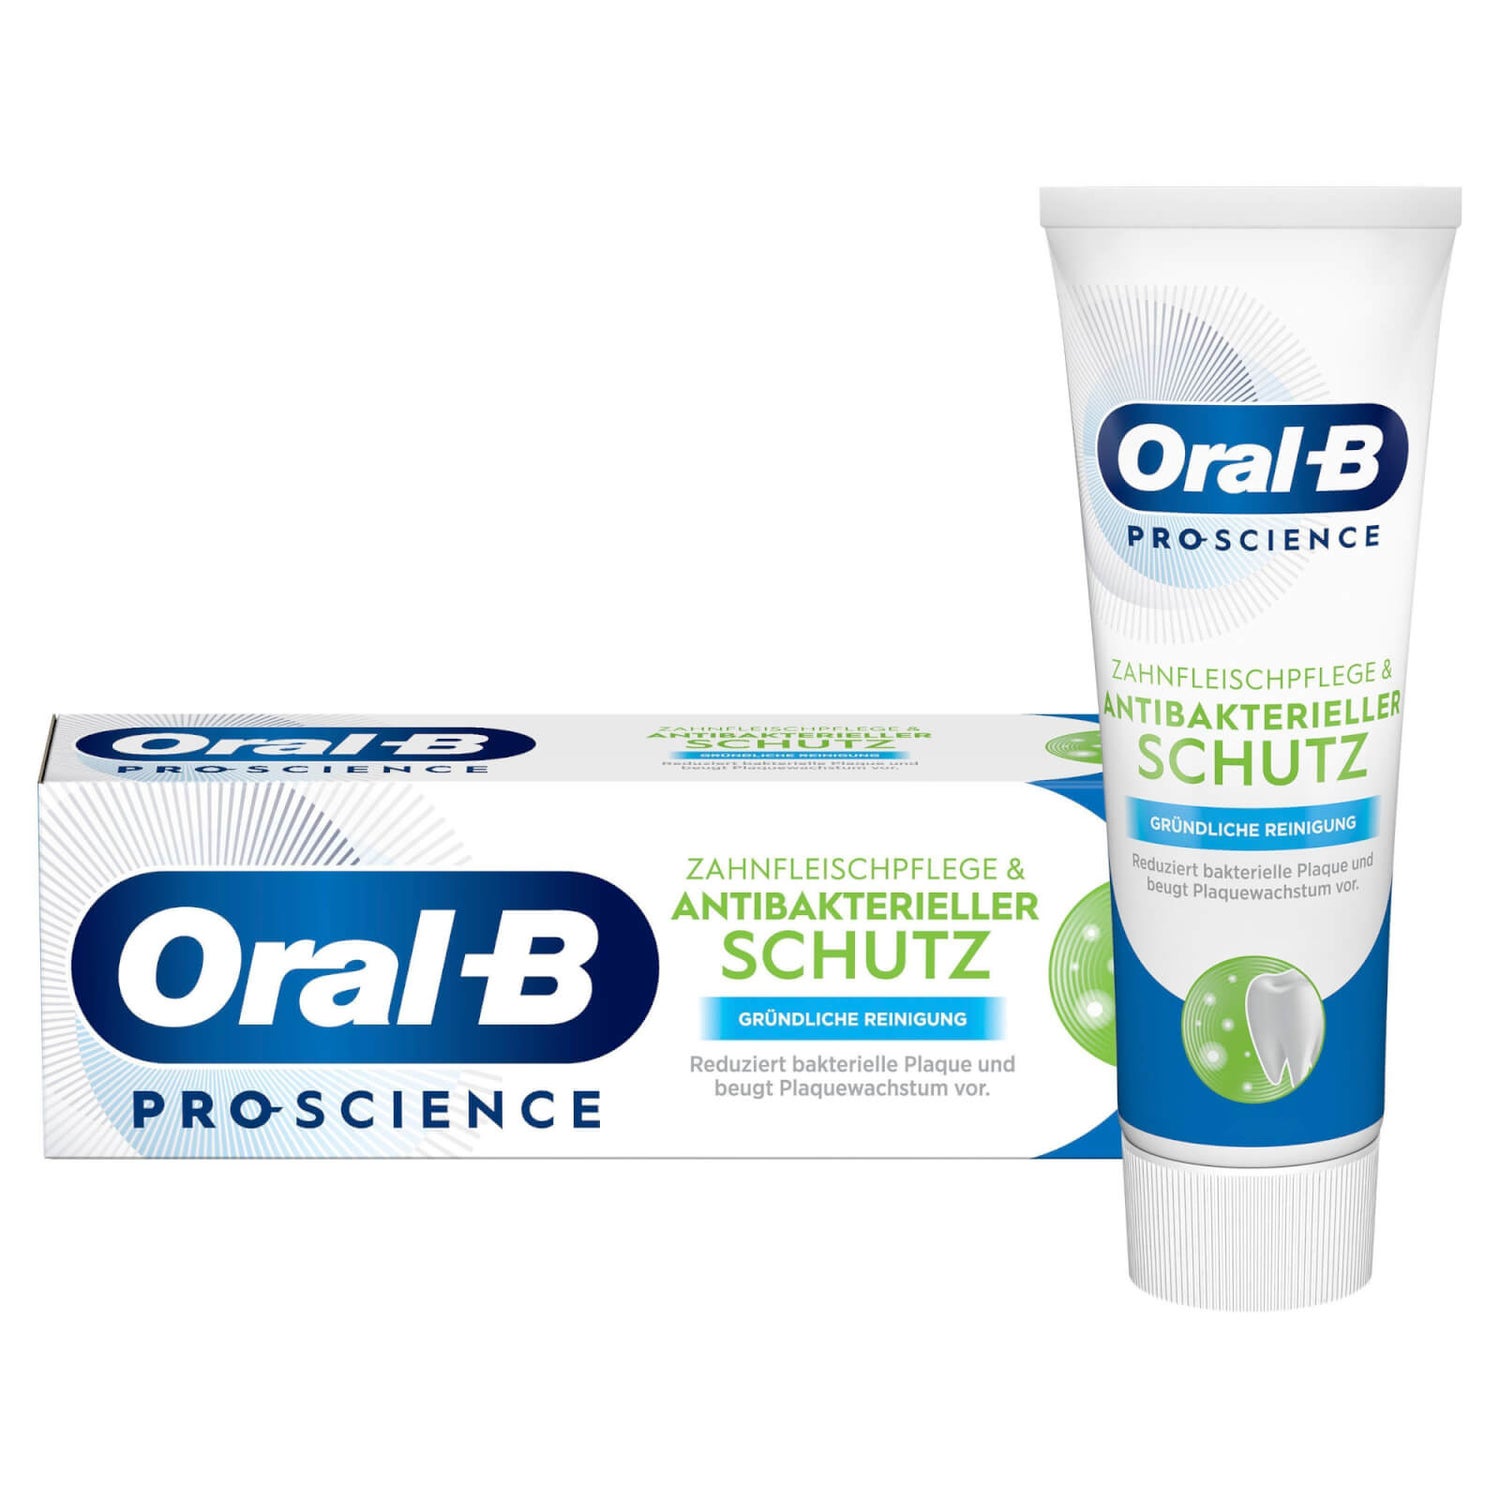 Oral-B PRO-SCIENCE Antibakterieller Schutz & Zahnfleischpflege Gründliche Reinigung Zahncreme 75ml